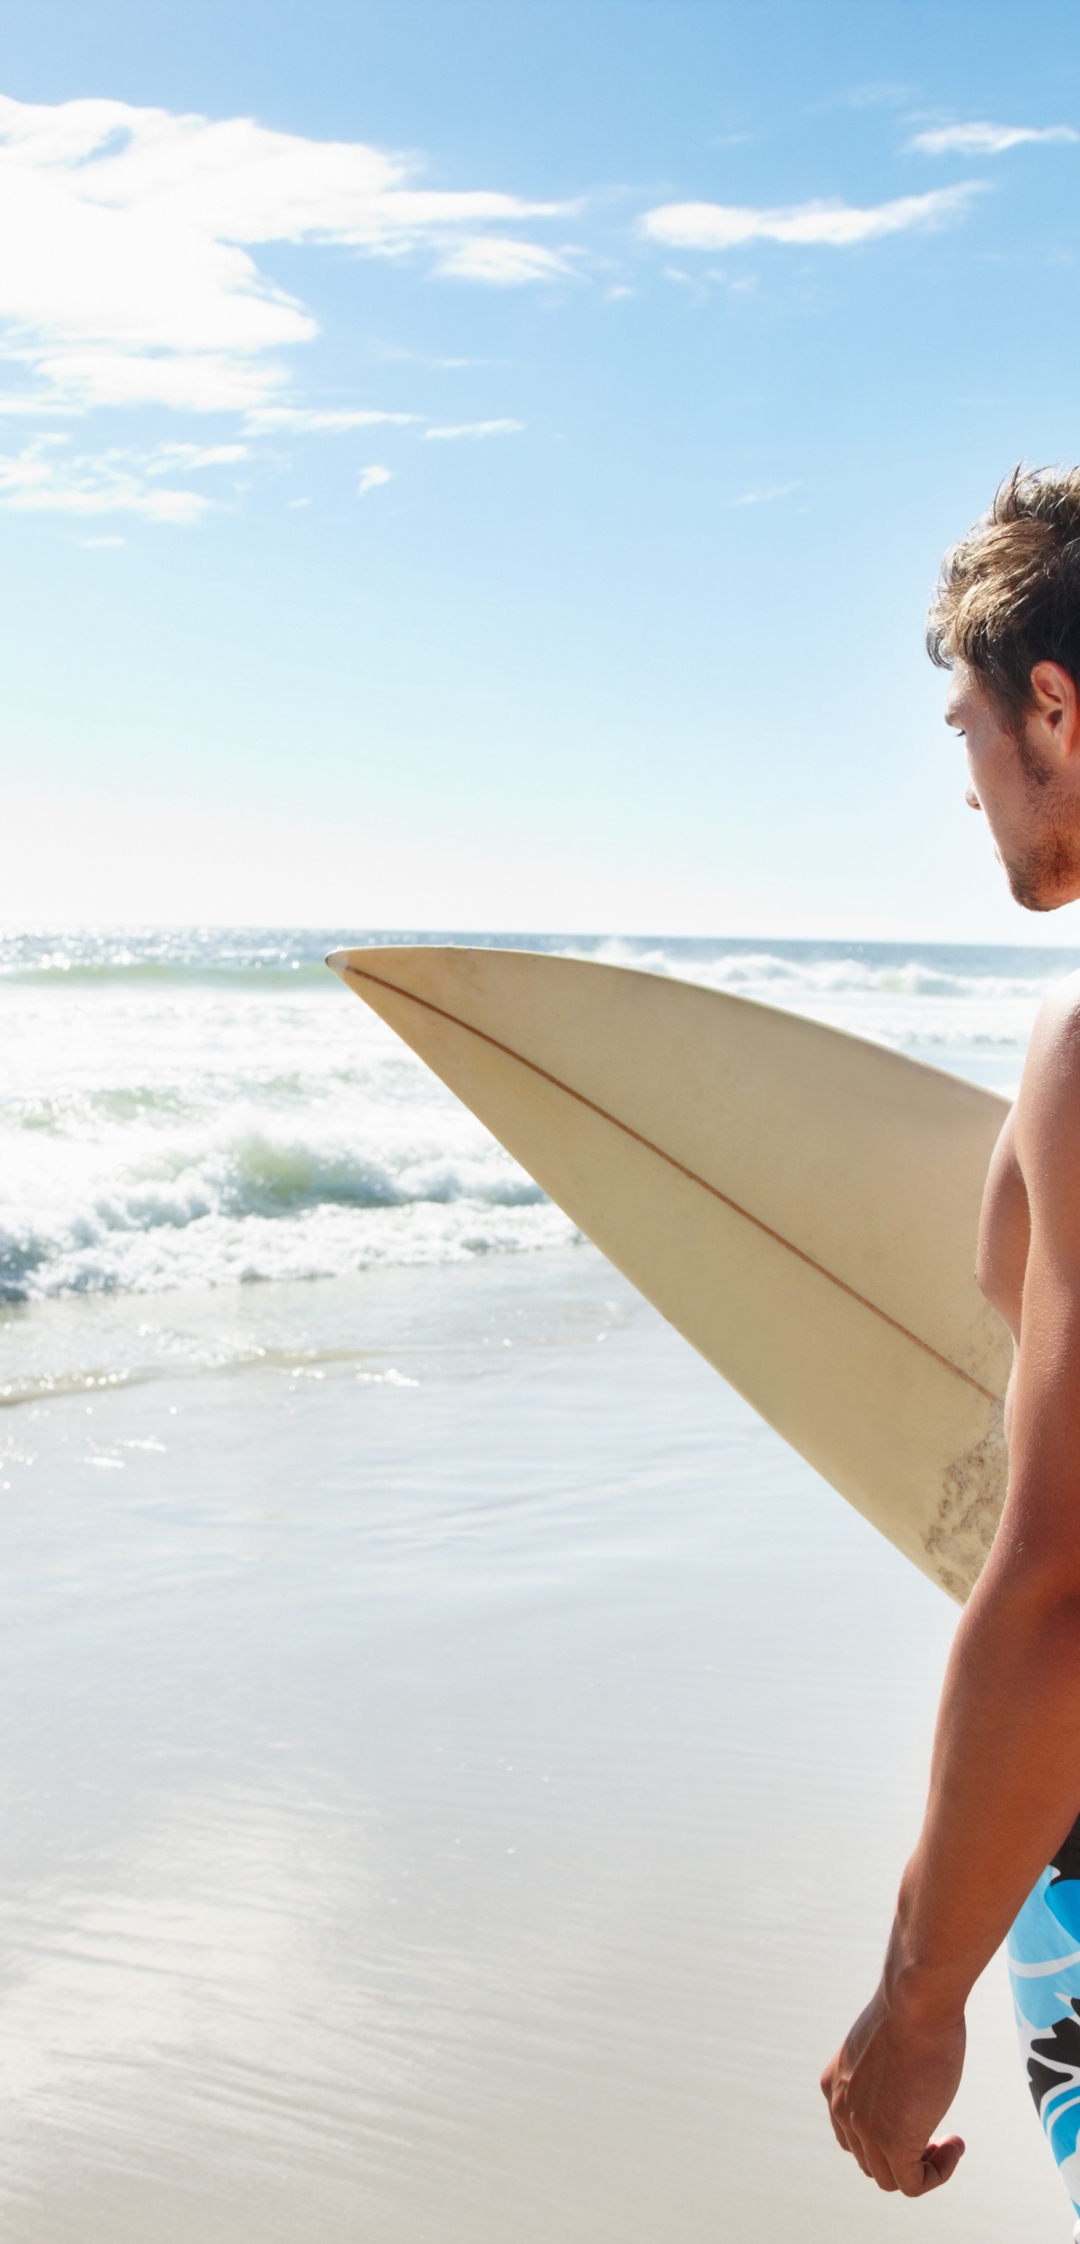 Картинка: Мужчина, сёрфер, доска, берег, пляж, солнечный день, море, волны, песок